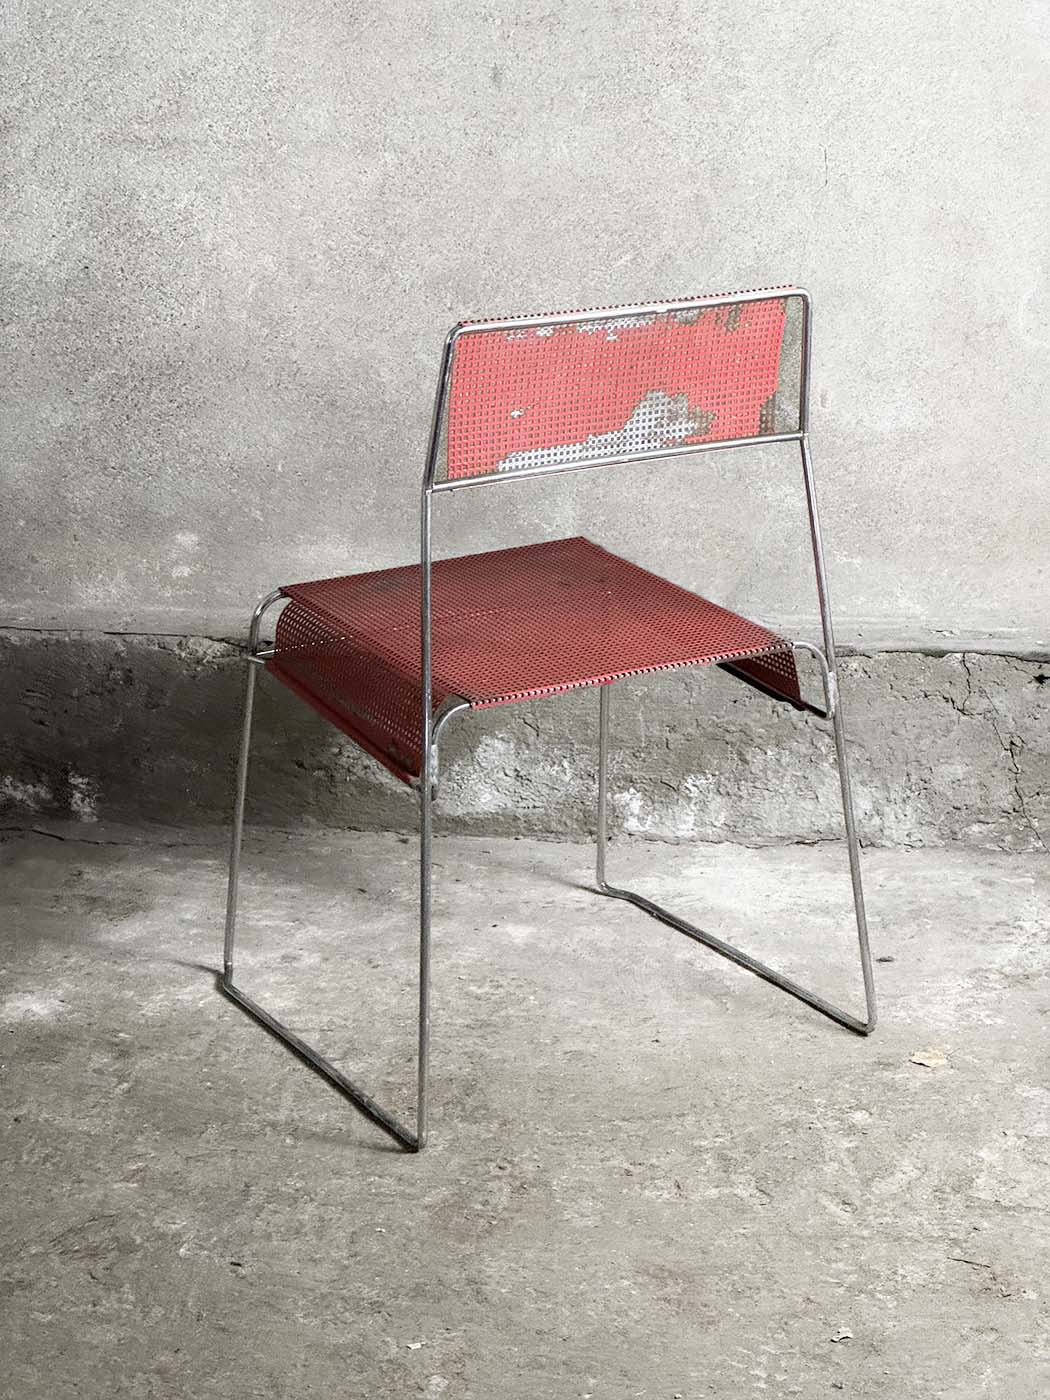 Magnus olesen czerwone krzesło siatkowe vintage industrual krzeslarz siatka detal retro